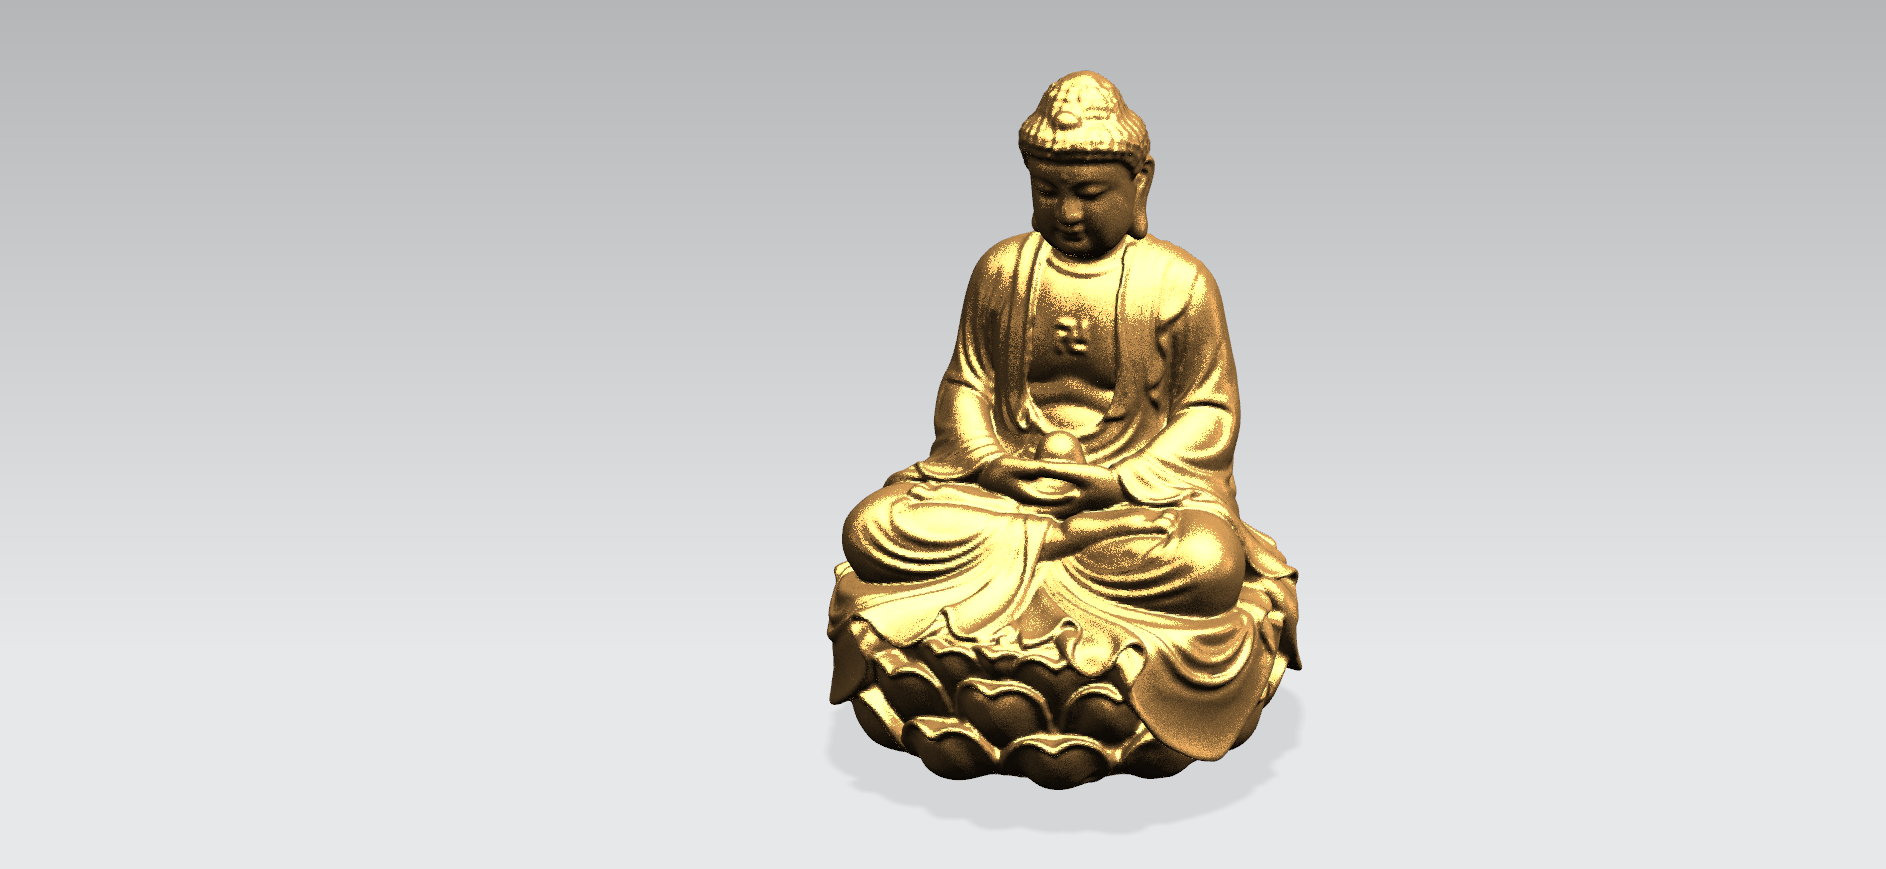 Будда 3д модель. Будда в лодке. Лицо Будды 3d модель. Миниатюра Будды в 35 масштабе. Будда в 3